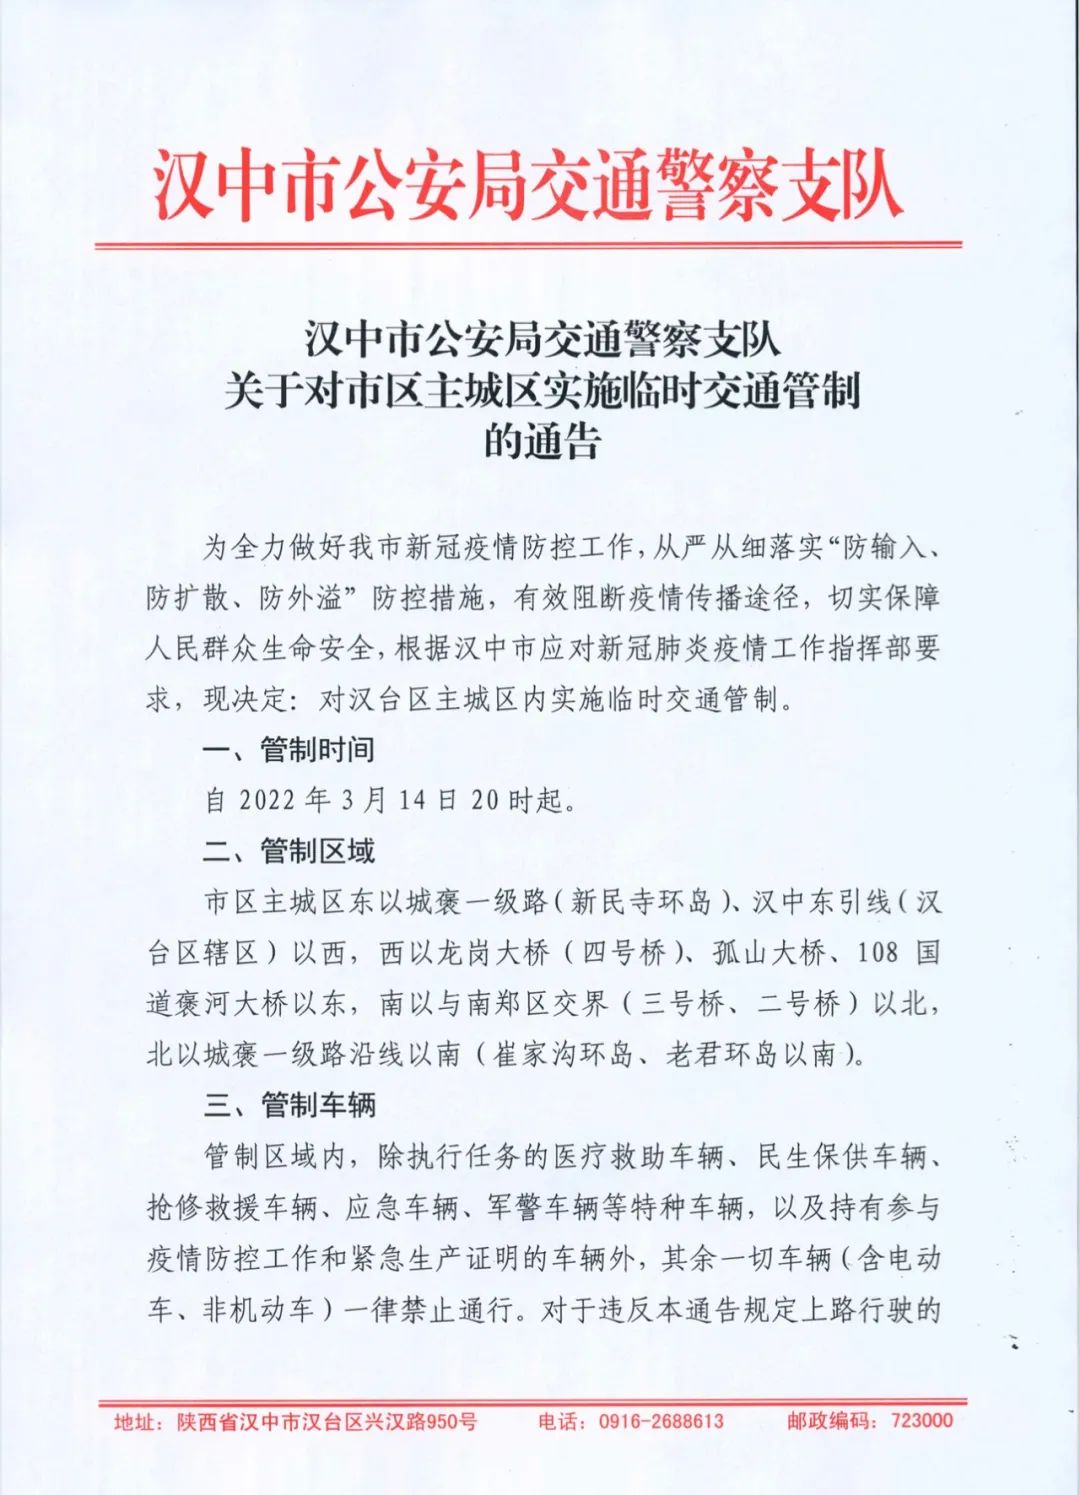 汉中市公安局交通警察支队关于对市区主城区实施临时交通管制的通告